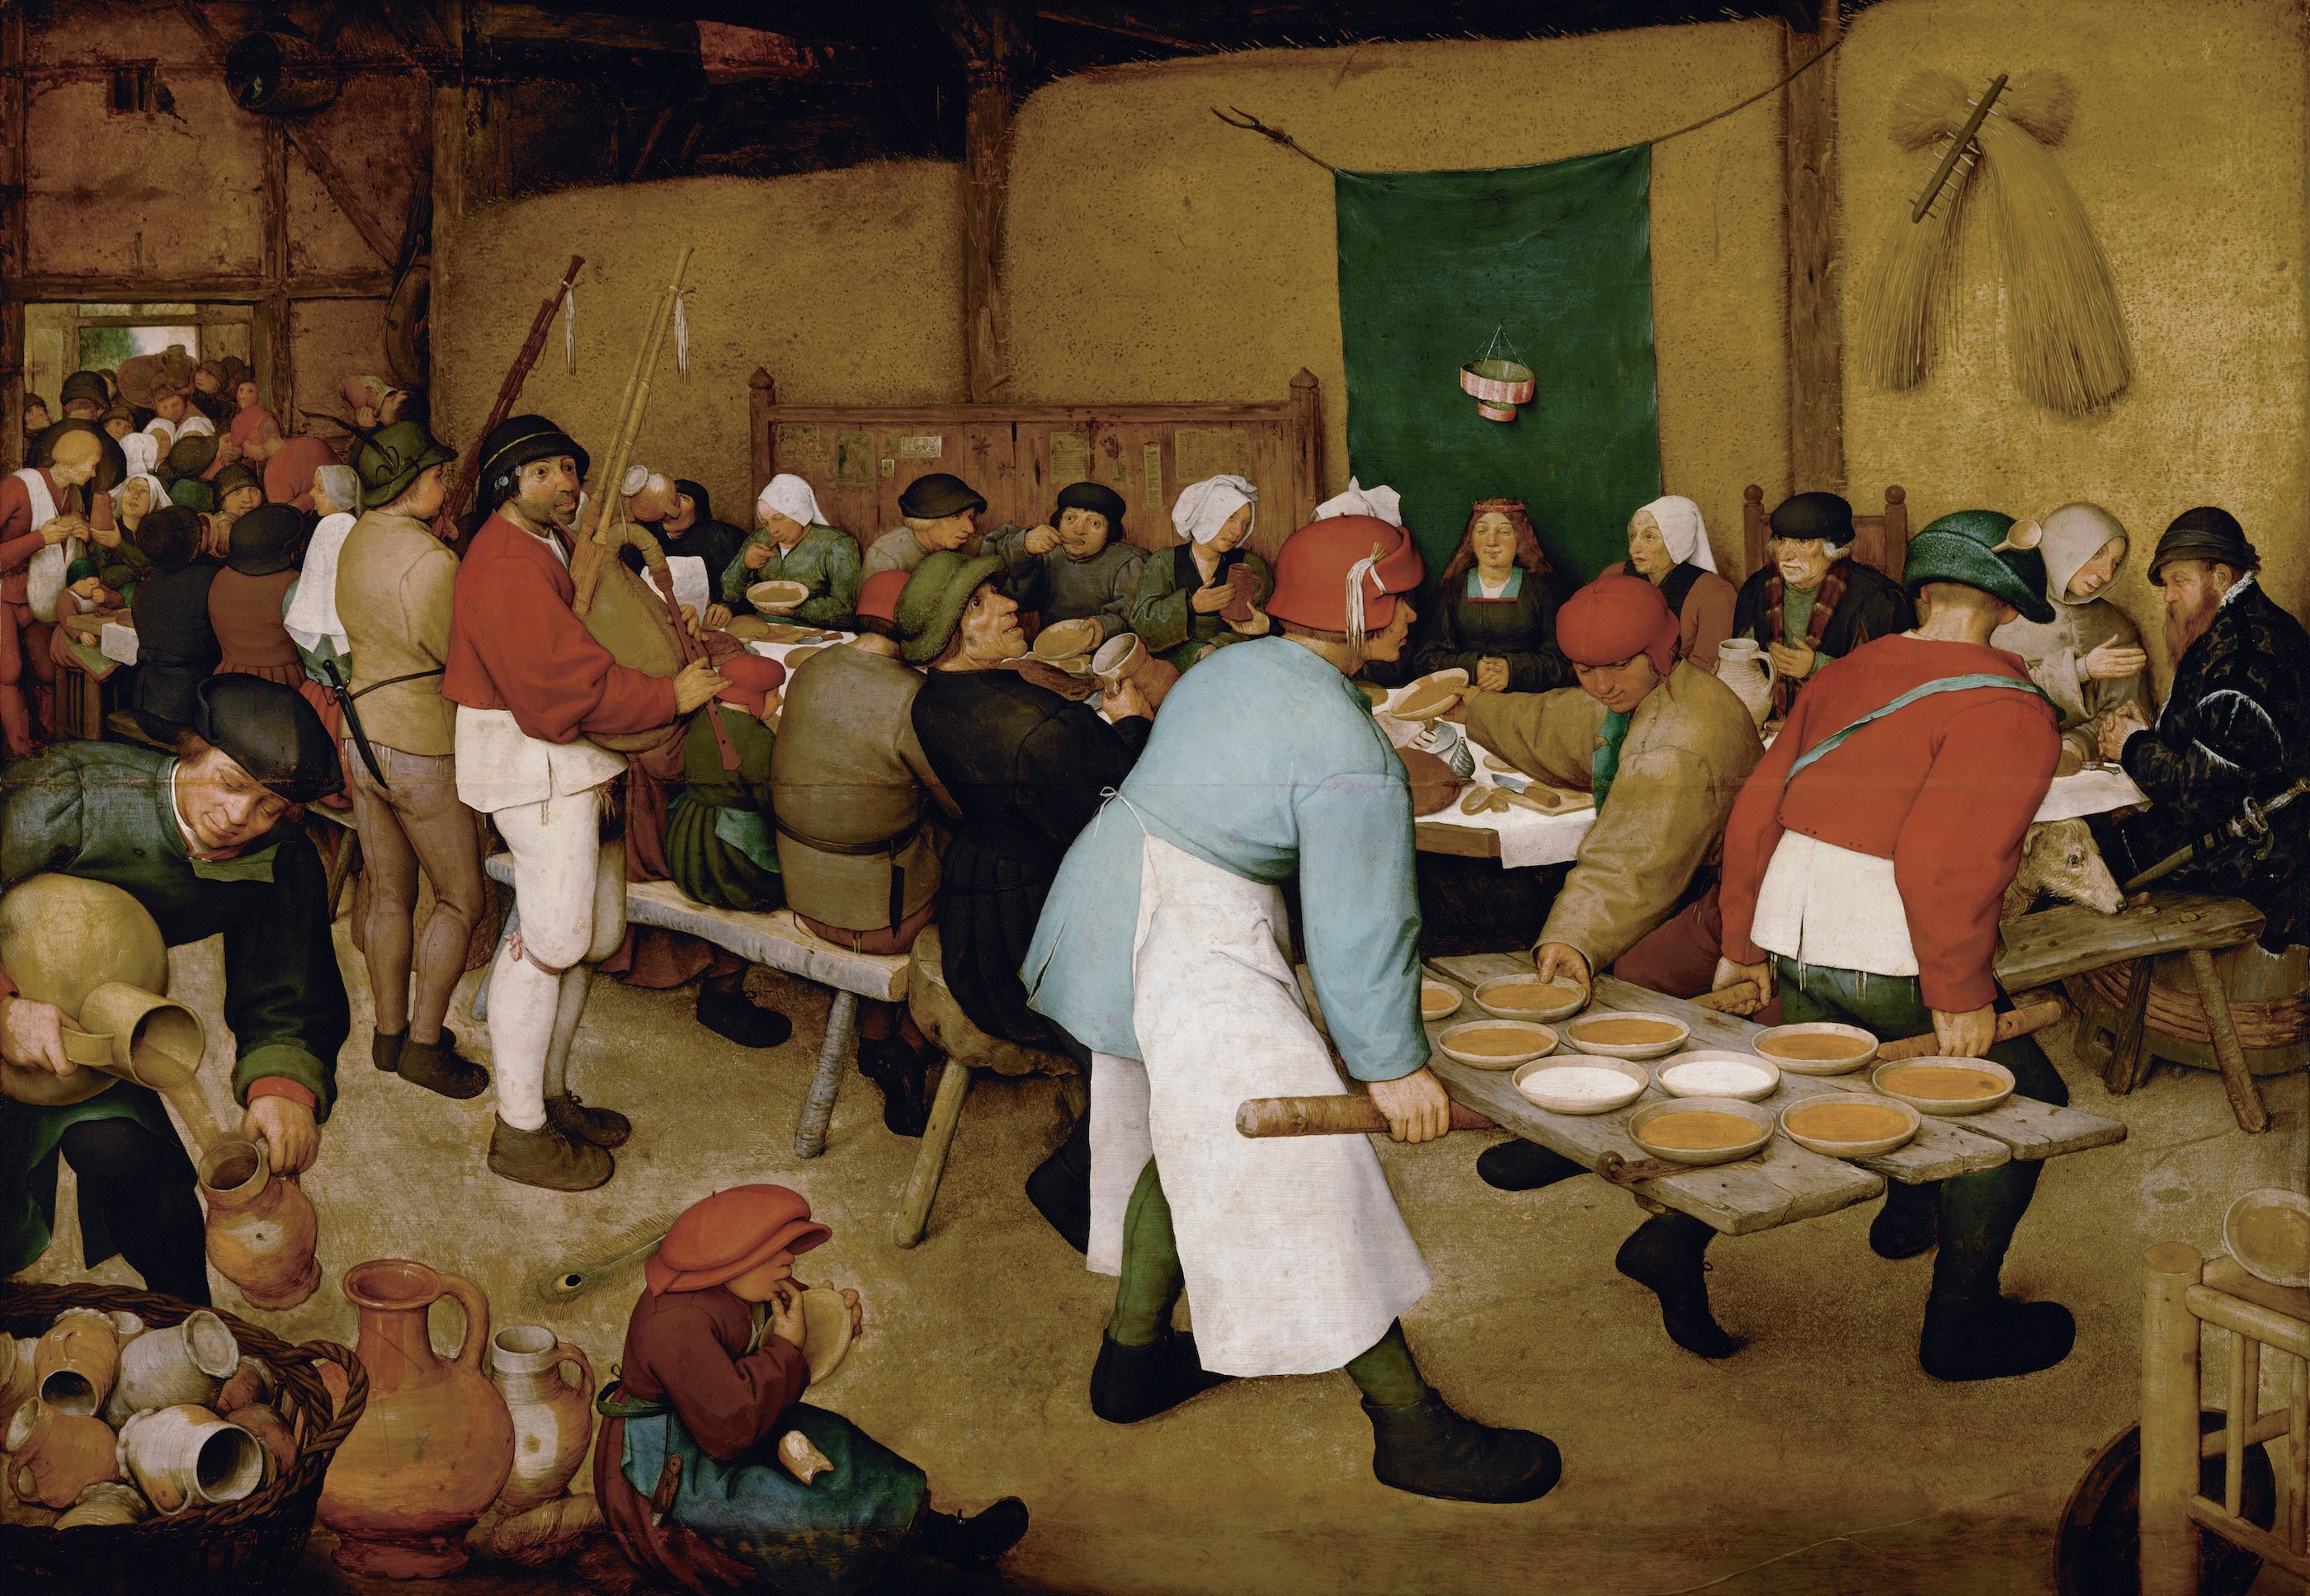 Die Bauernhochzeit by Pieter Bruegel der Ältere - 1568 - 124 x 164 cm Kunsthistorisches Museum